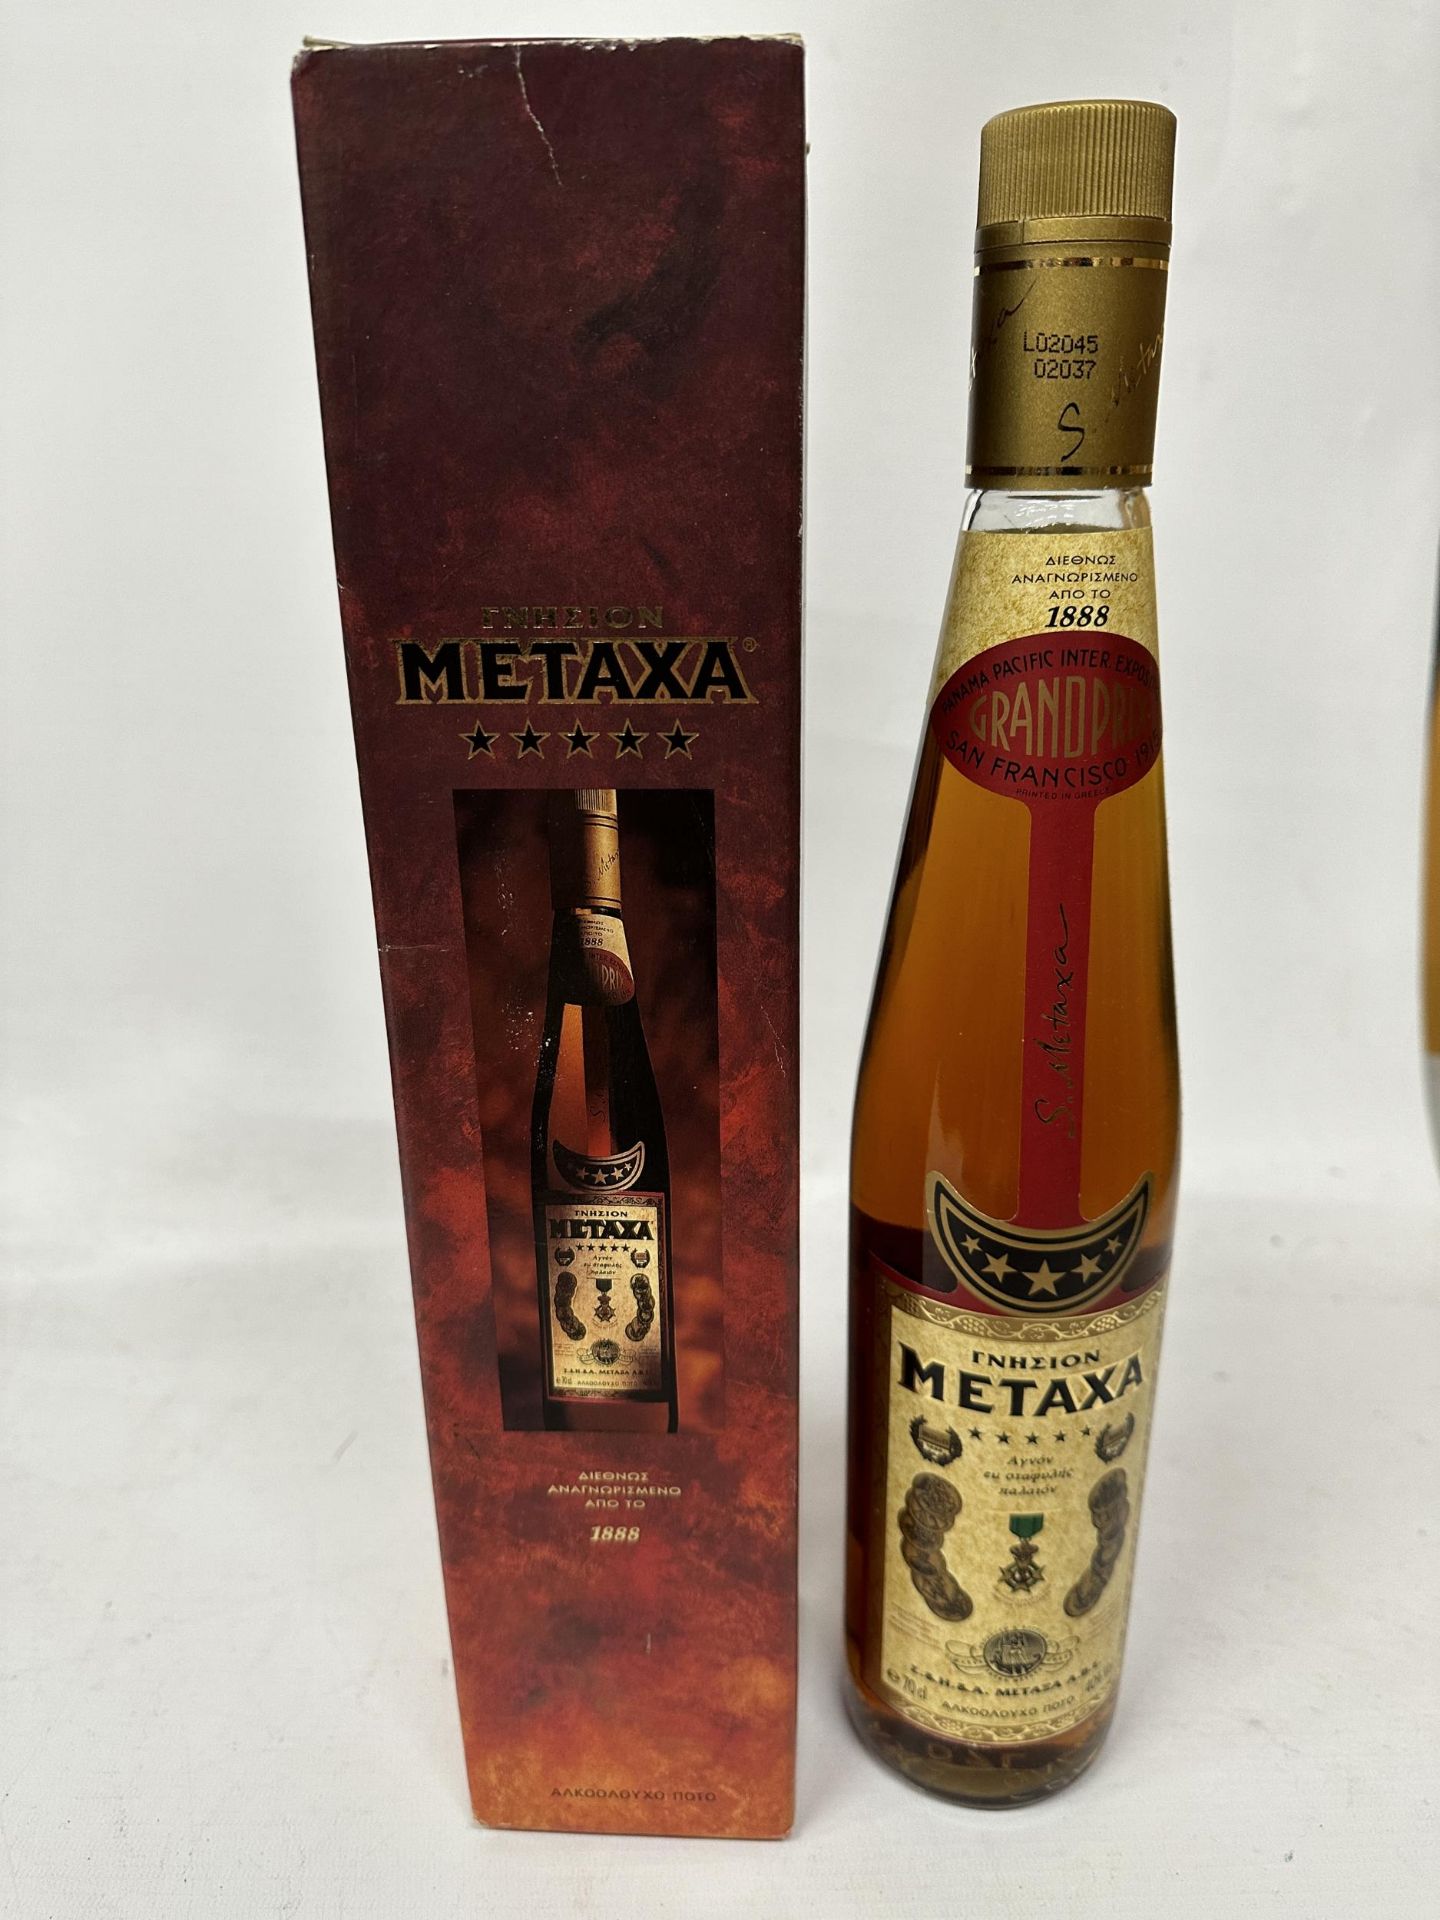 A BOXED 70CL 40% BOTTLE OF METAXA GREEK BRANDY